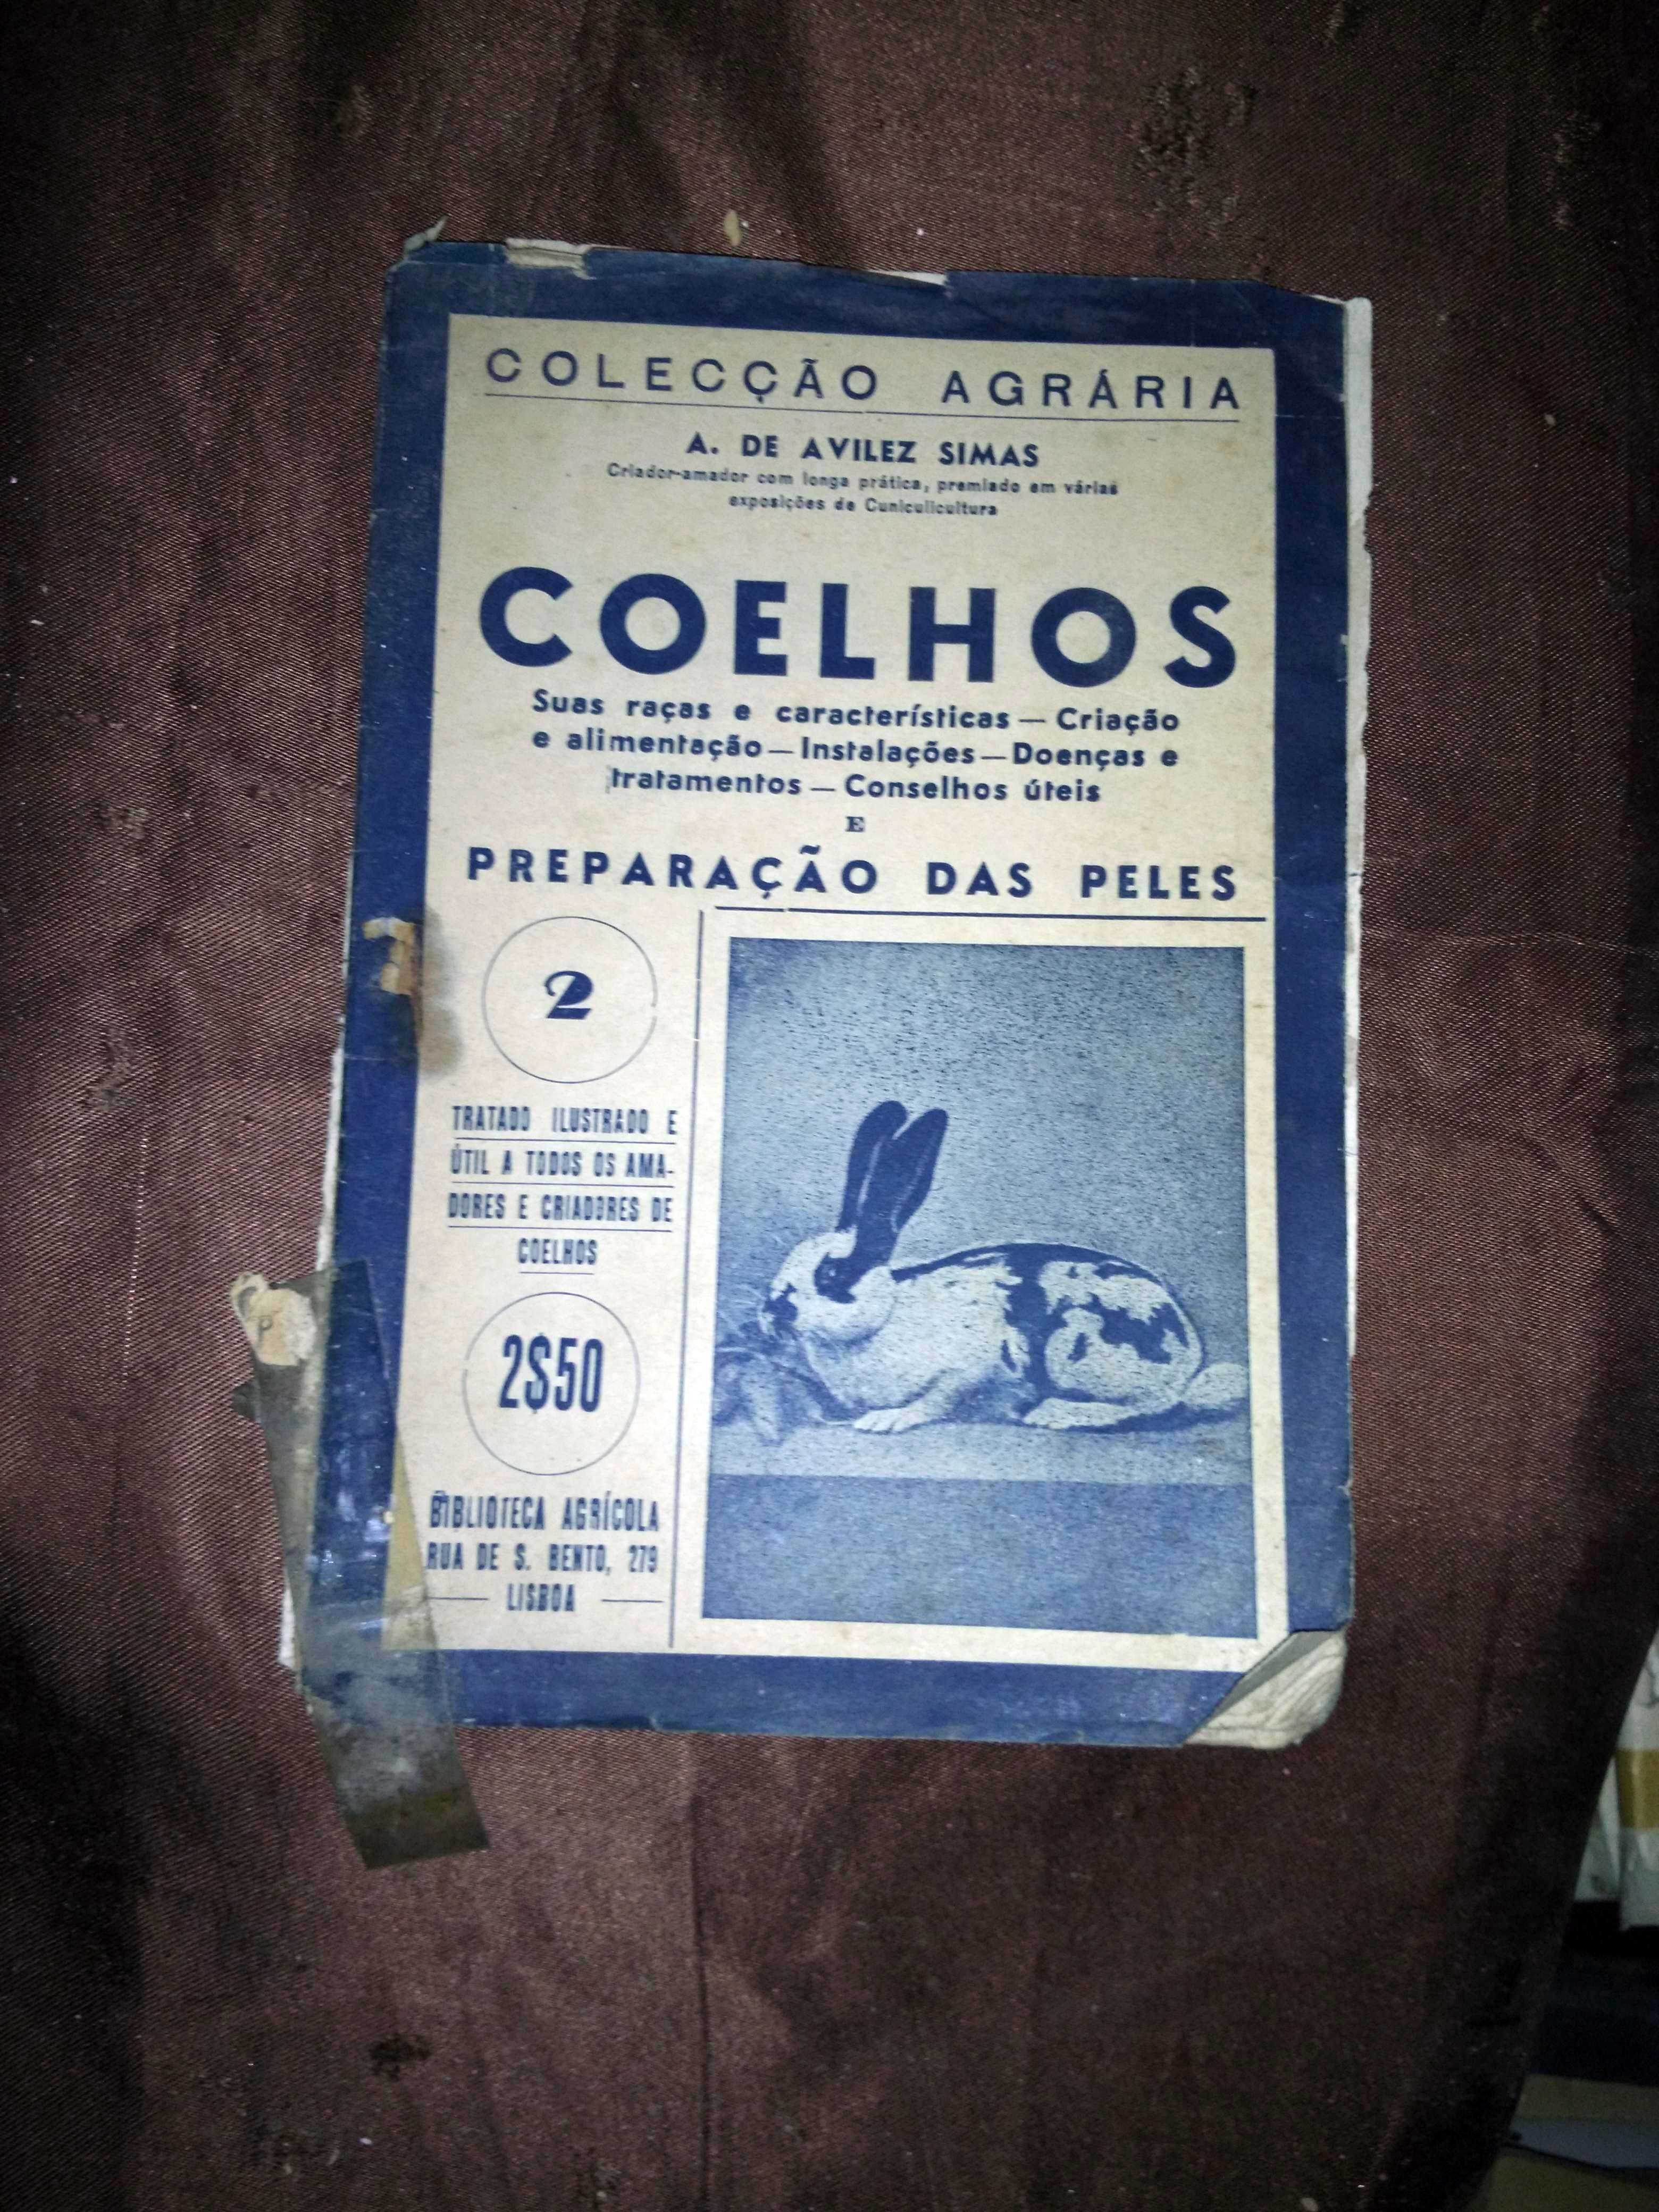 Coelhos - Colecção Agrária